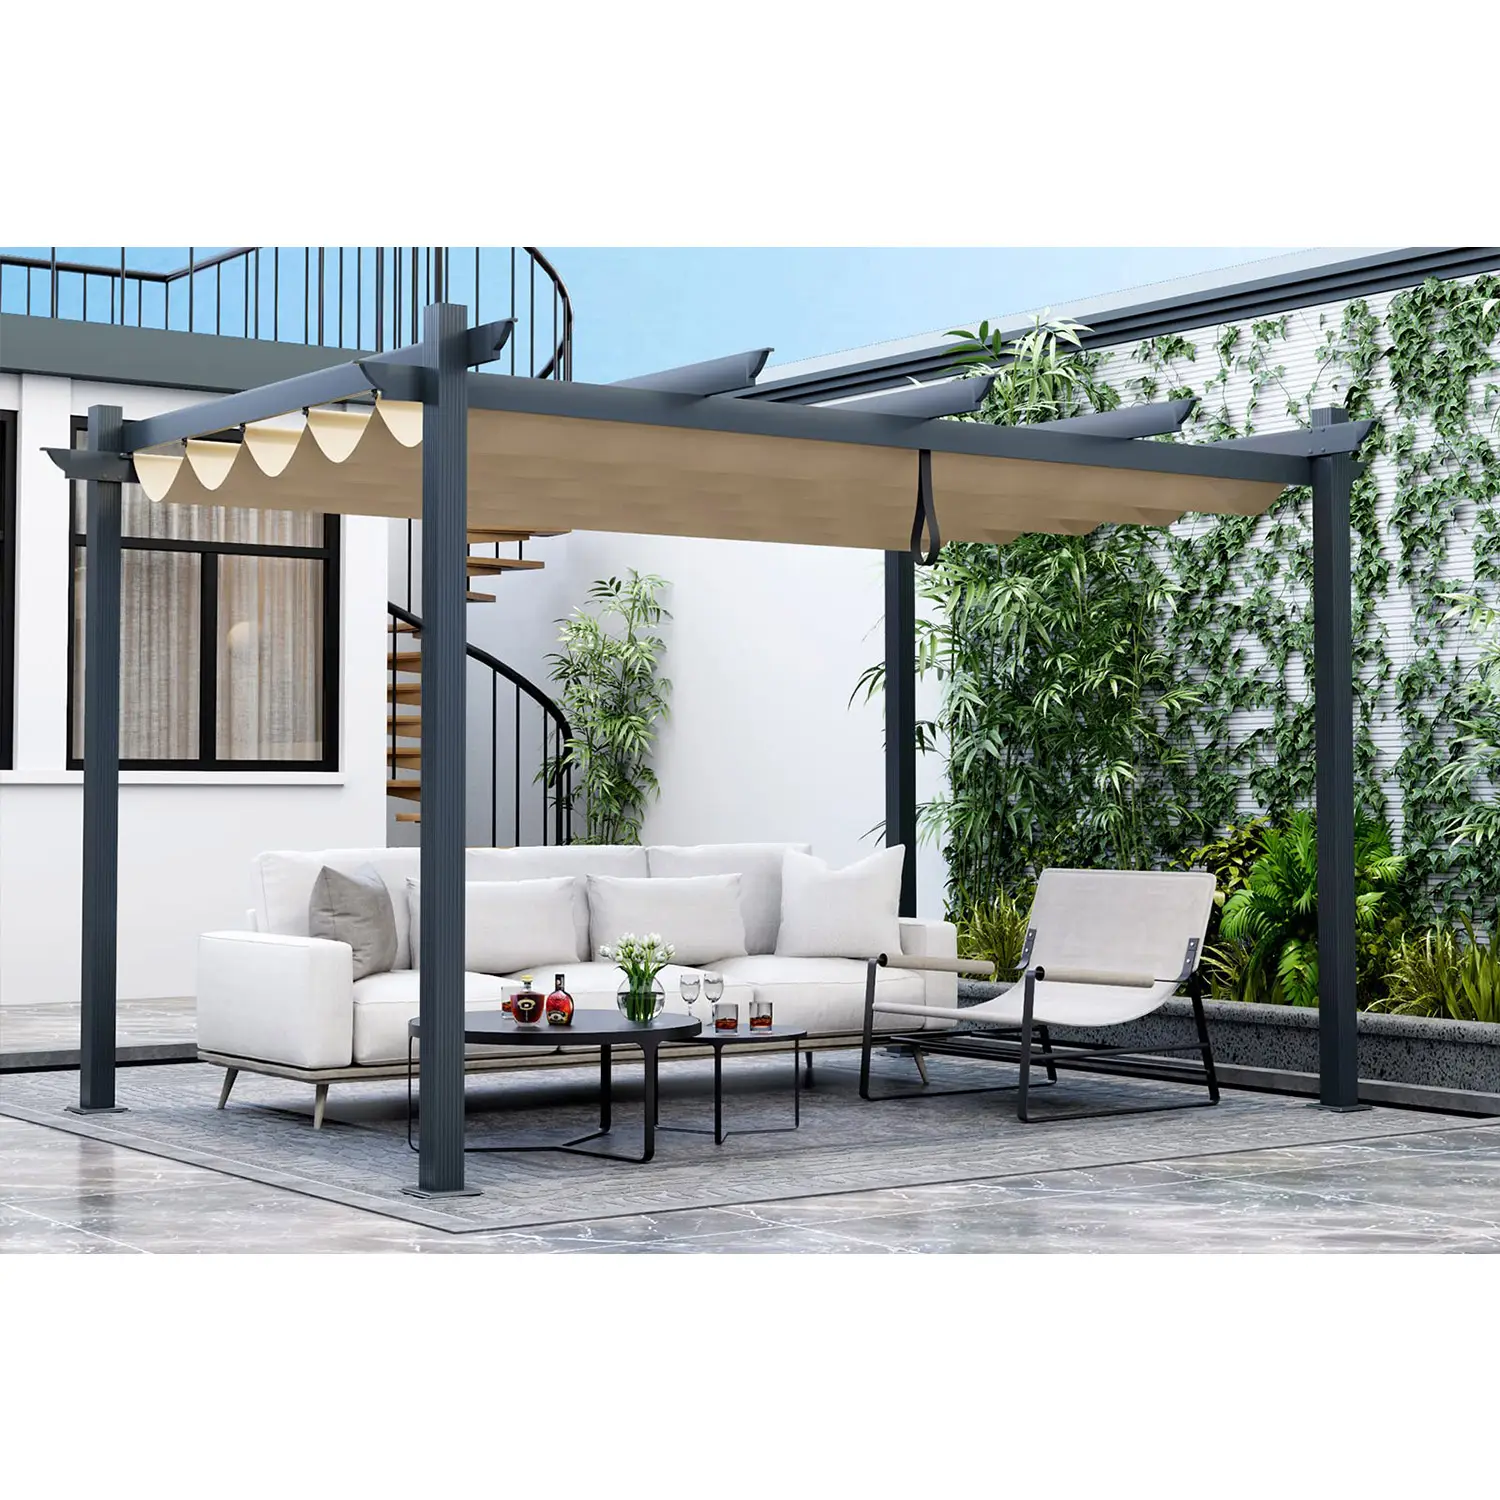 3x4m pergolato esterno in alluminio resistente con tettoia parasole retrattile, padiglione di rifugio per Patio Extra Large 10x13 Ft